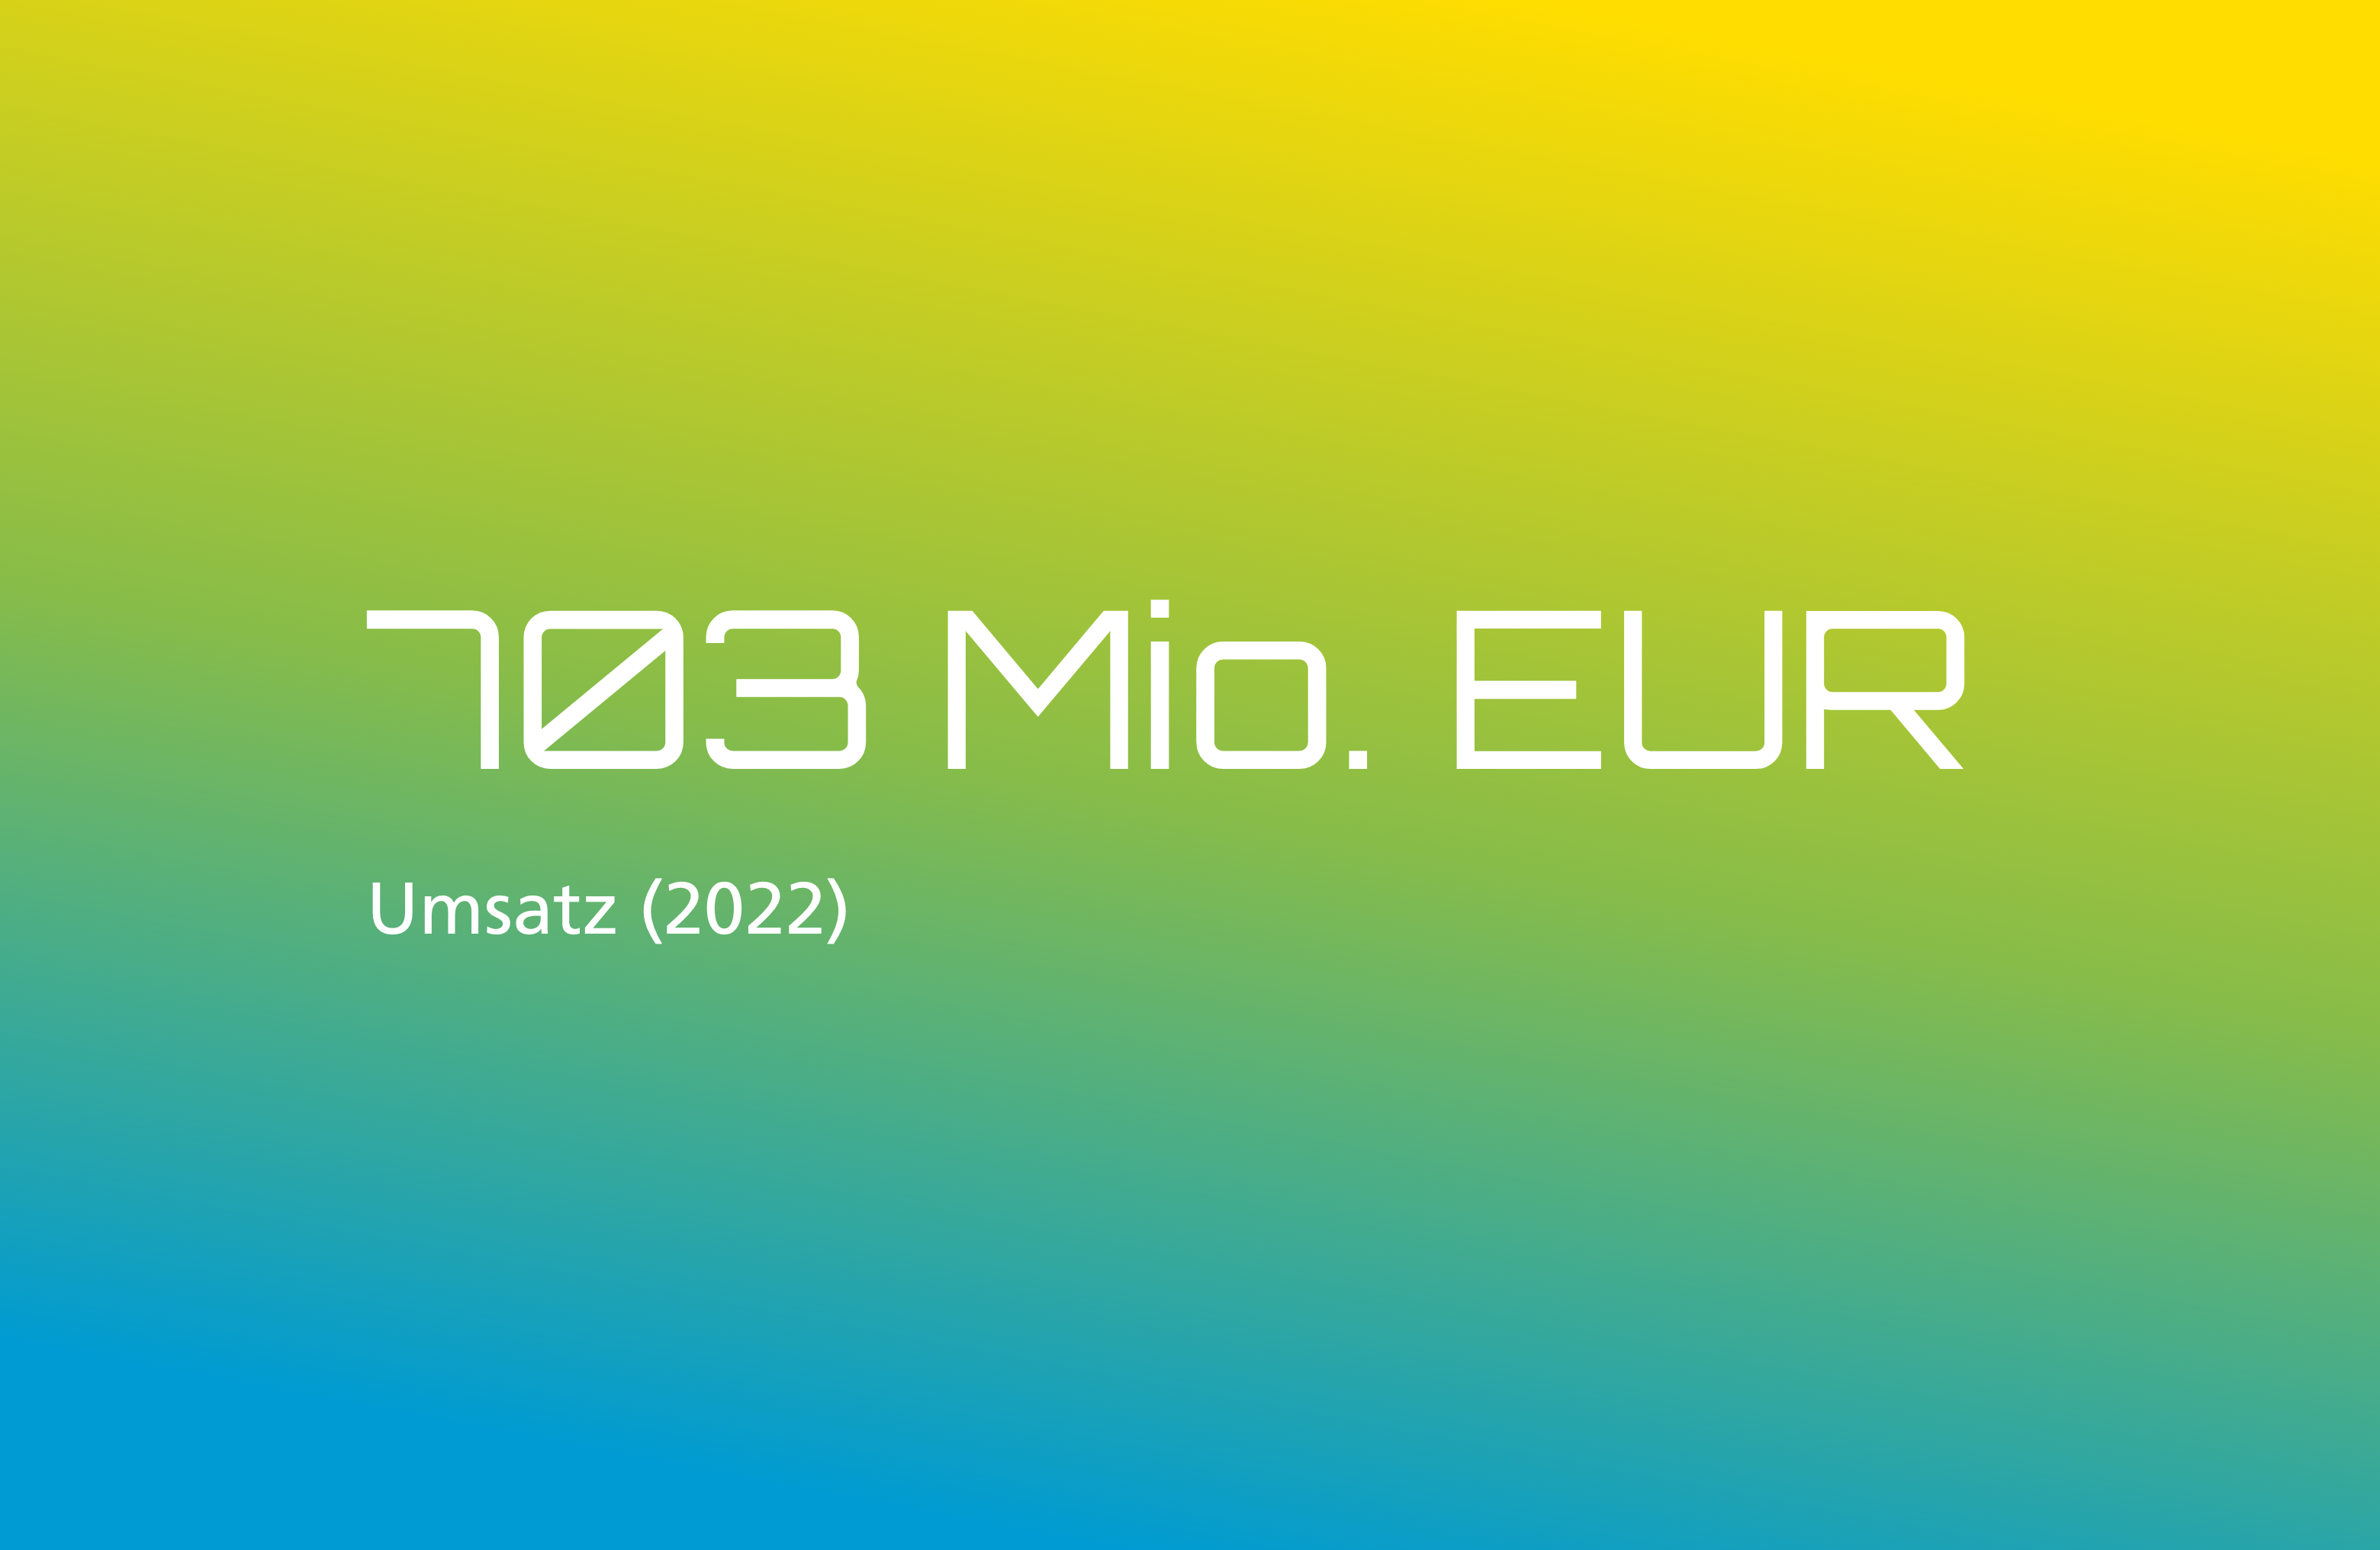 703 Mio. EUR (Umsatz 2022)